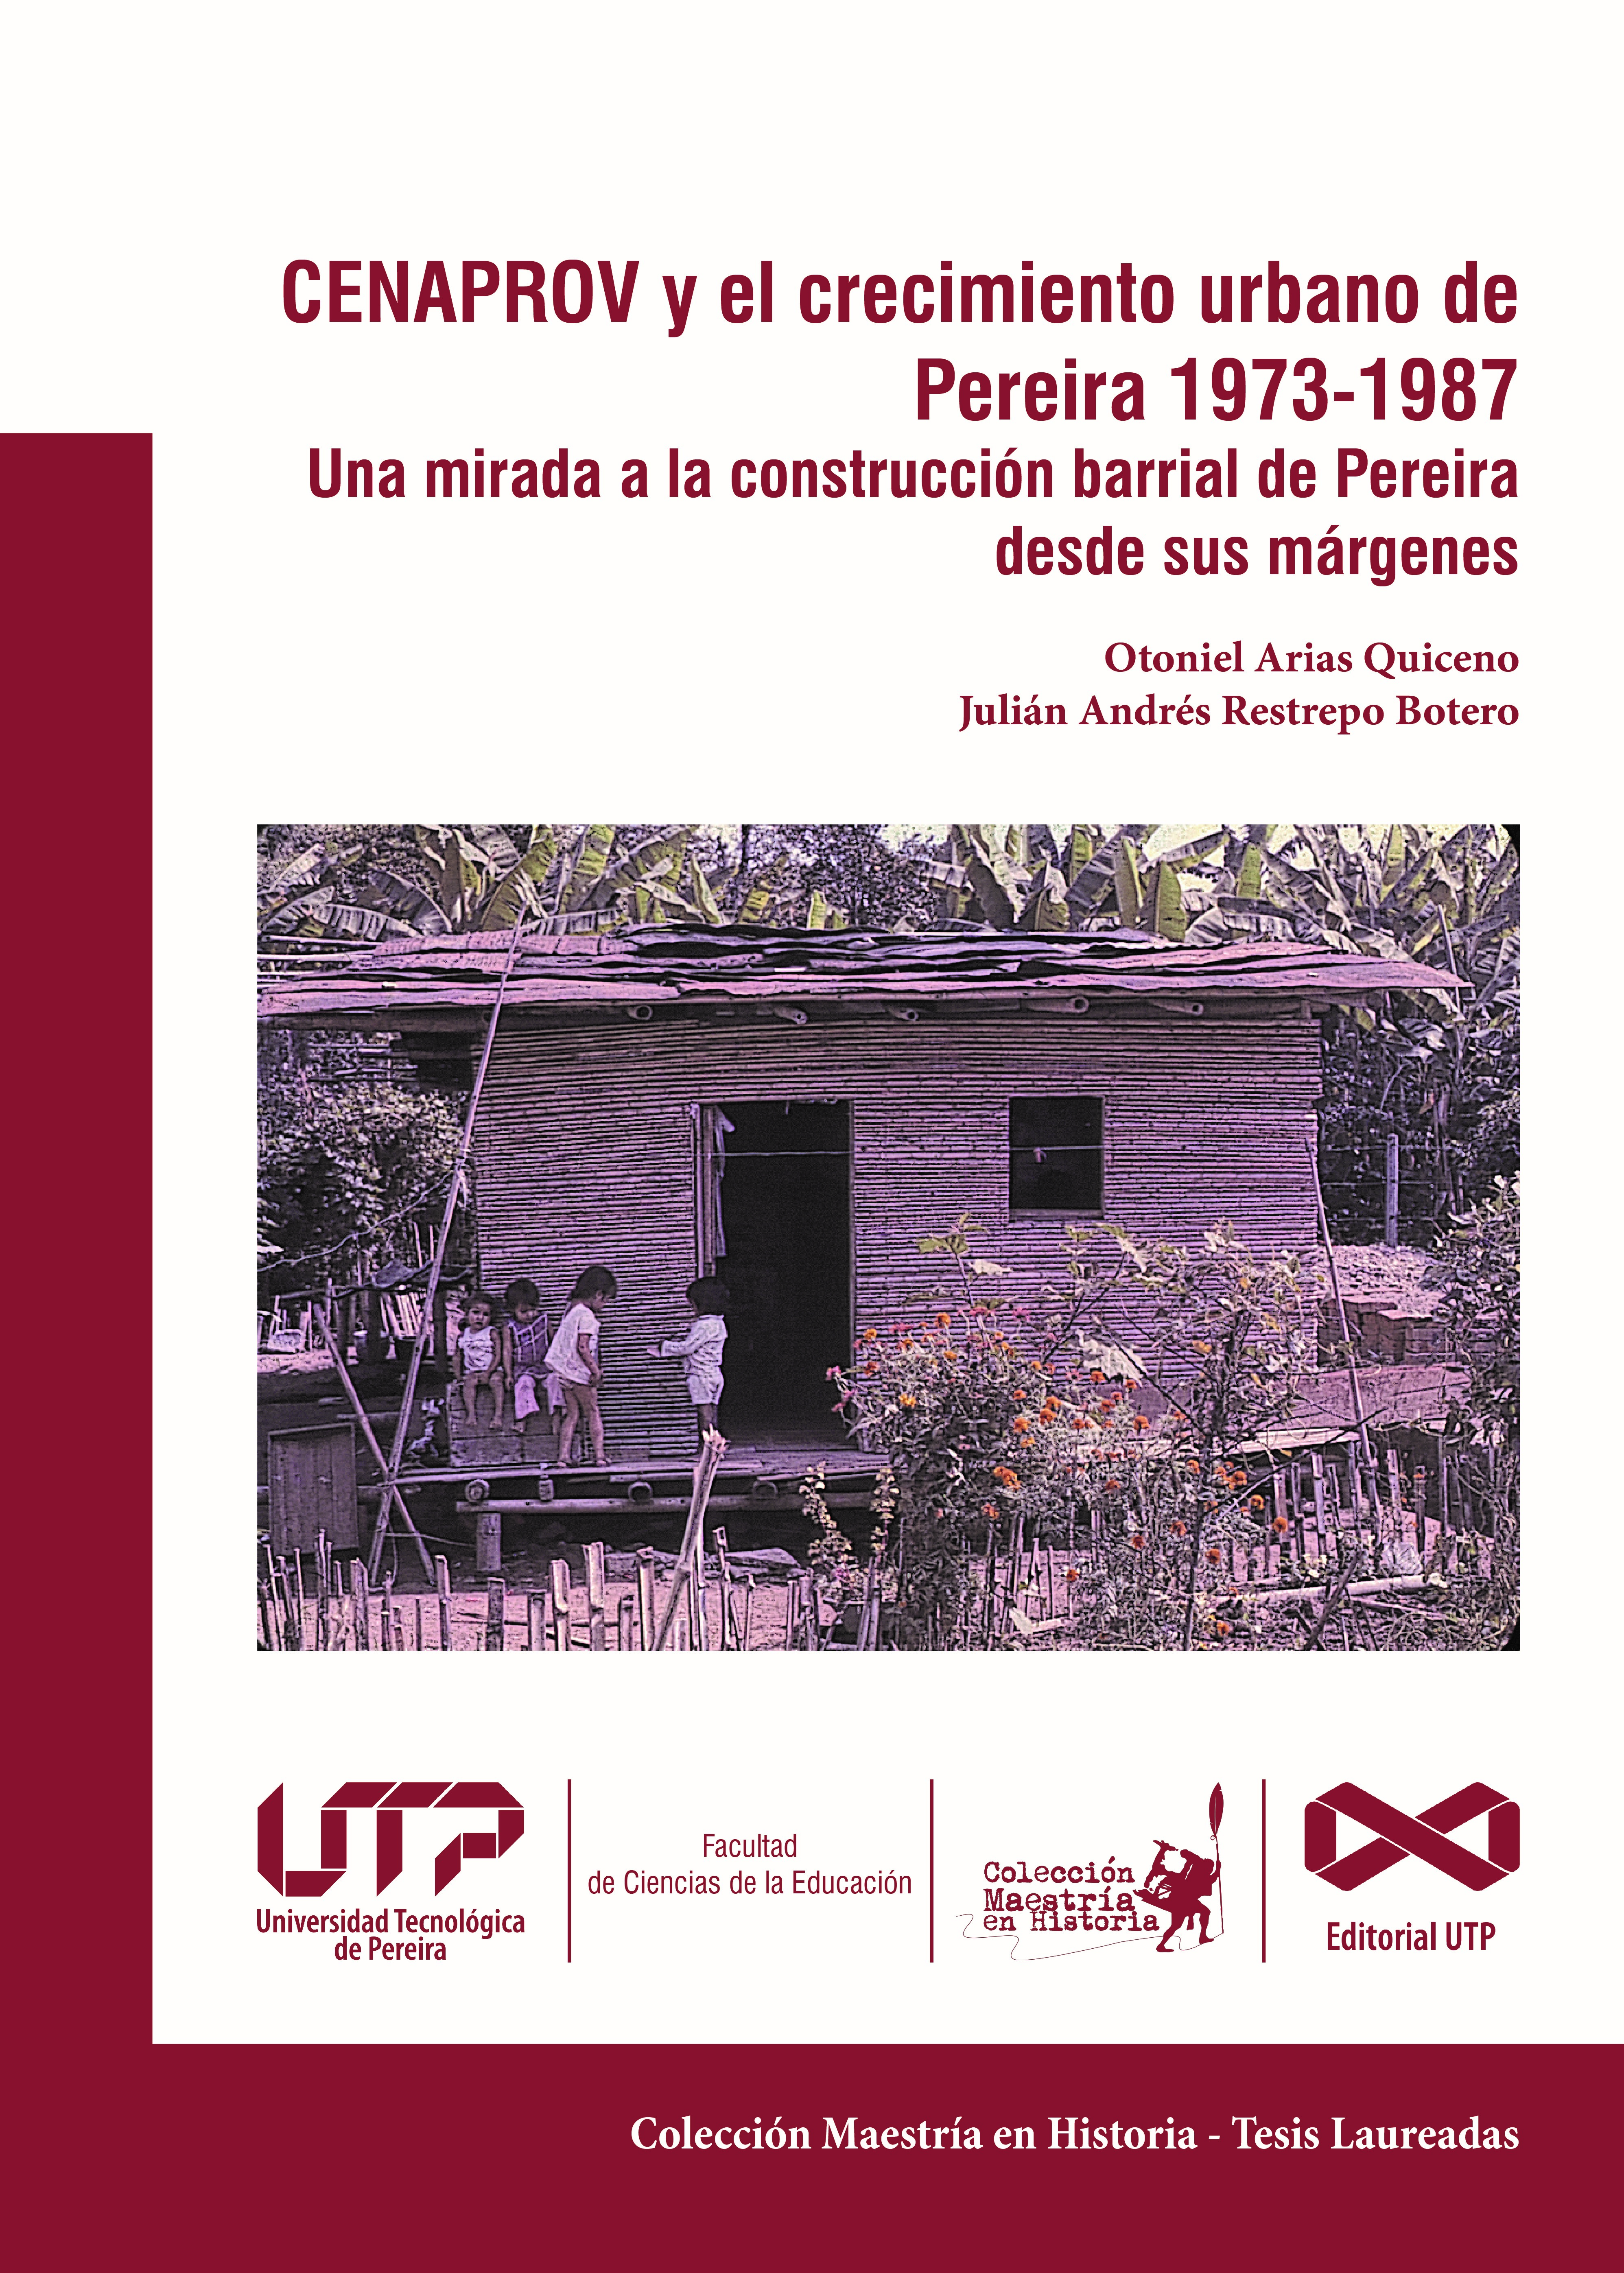 CENAPROV y el crecimiento urbano de Pereira 1973-1987. Una mirada a la construcción barrial de Pereira desde sus márgenes